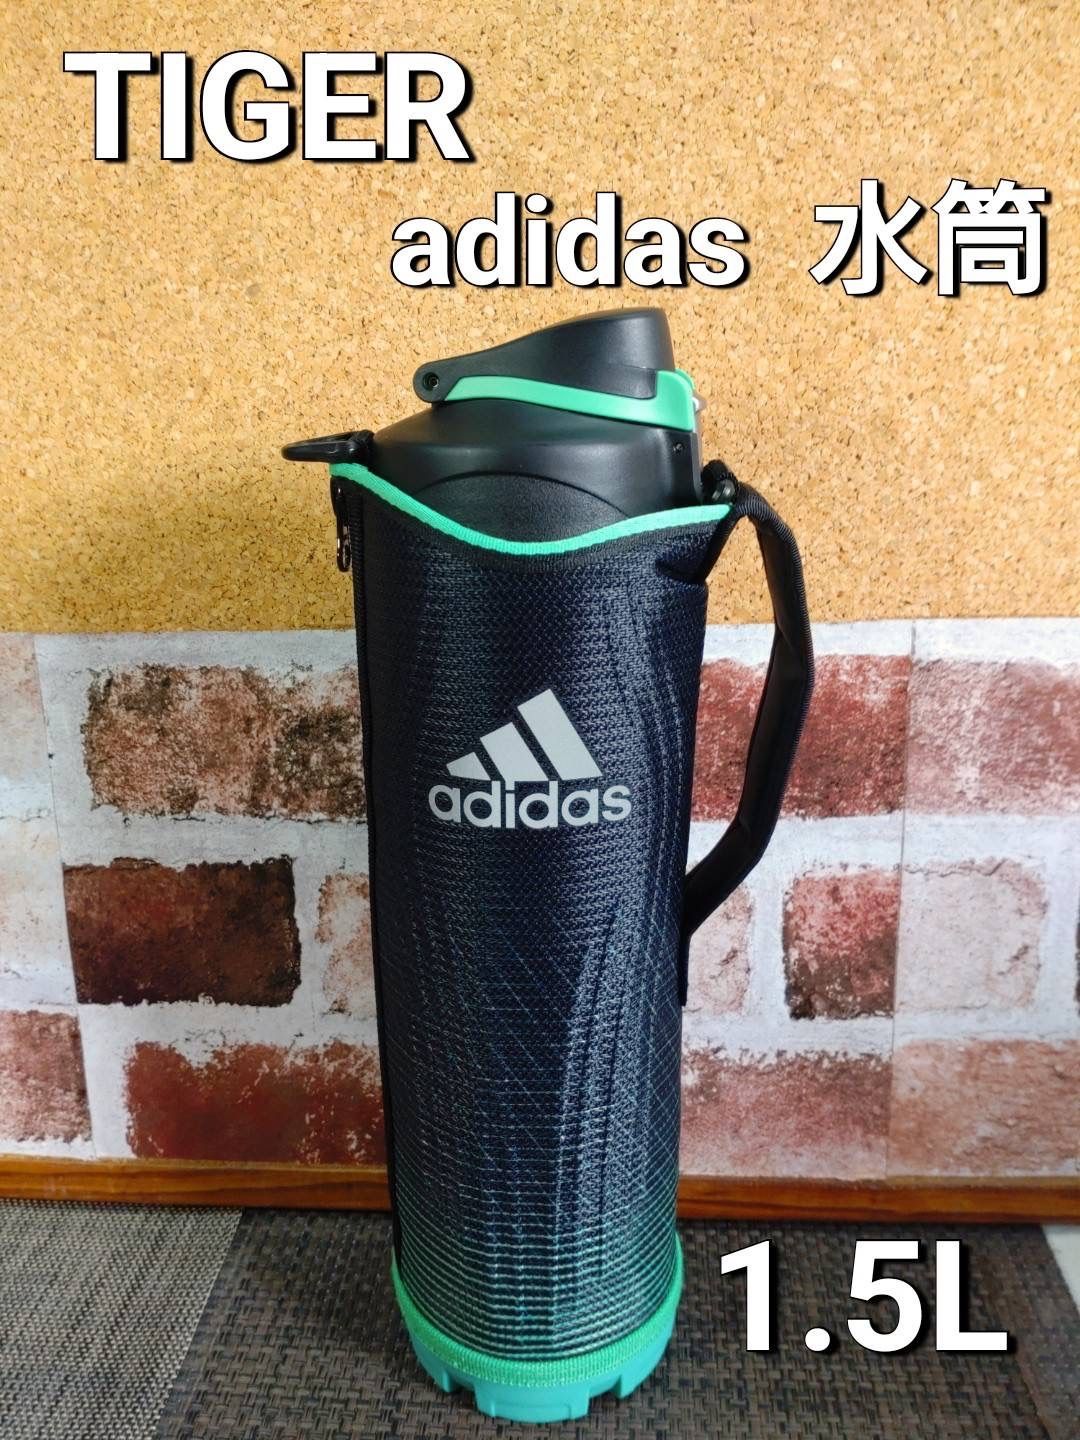 ✨希少✨タイガー アディダス 水筒1.5L - メルカリ